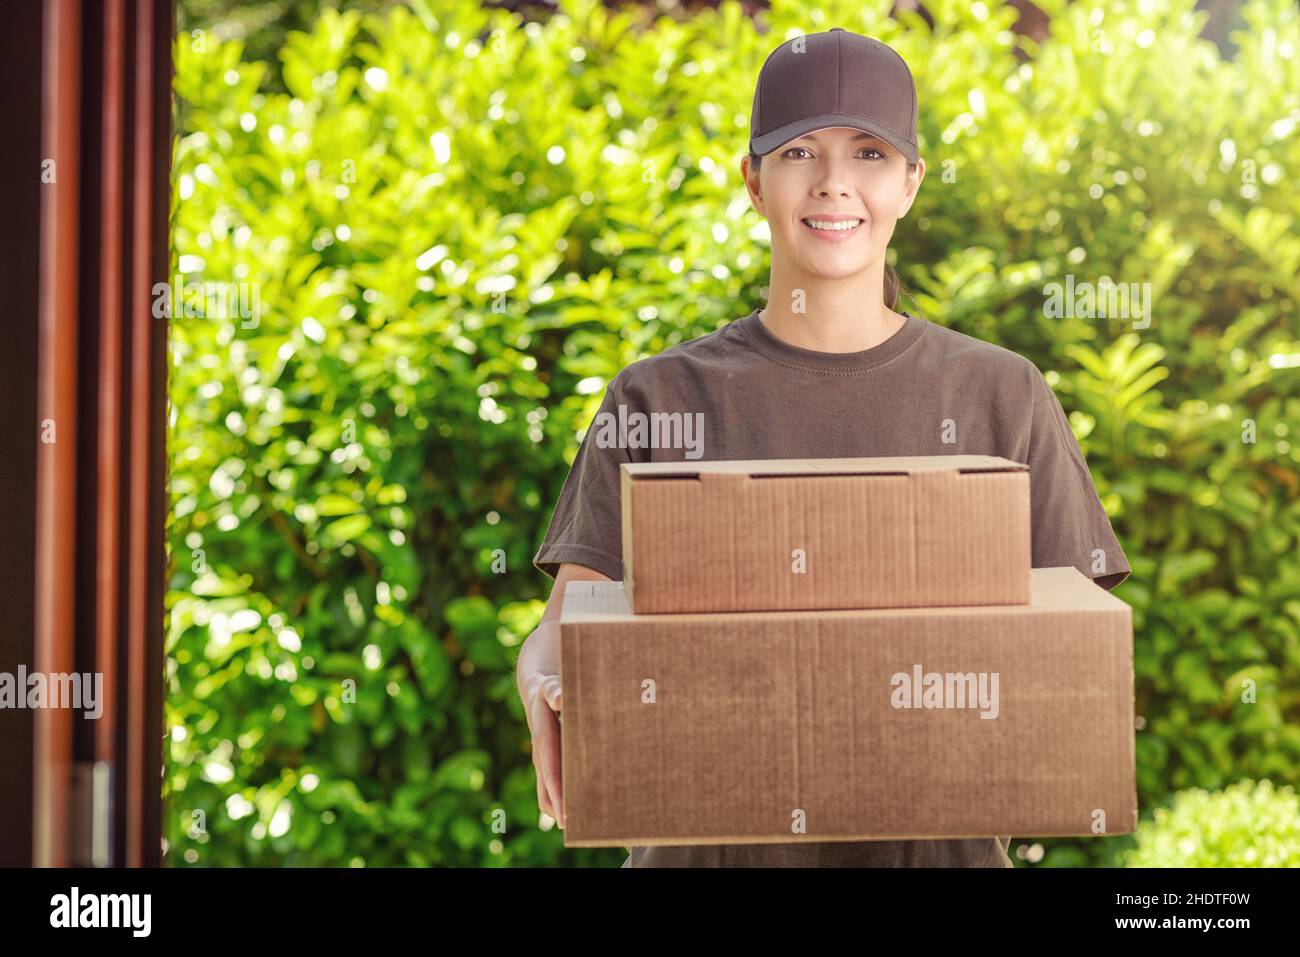 pacchetto, consegna, messaggero, consegnatore, pacchi, consegna, consegne, consegna, corriere, messaggeri Foto Stock